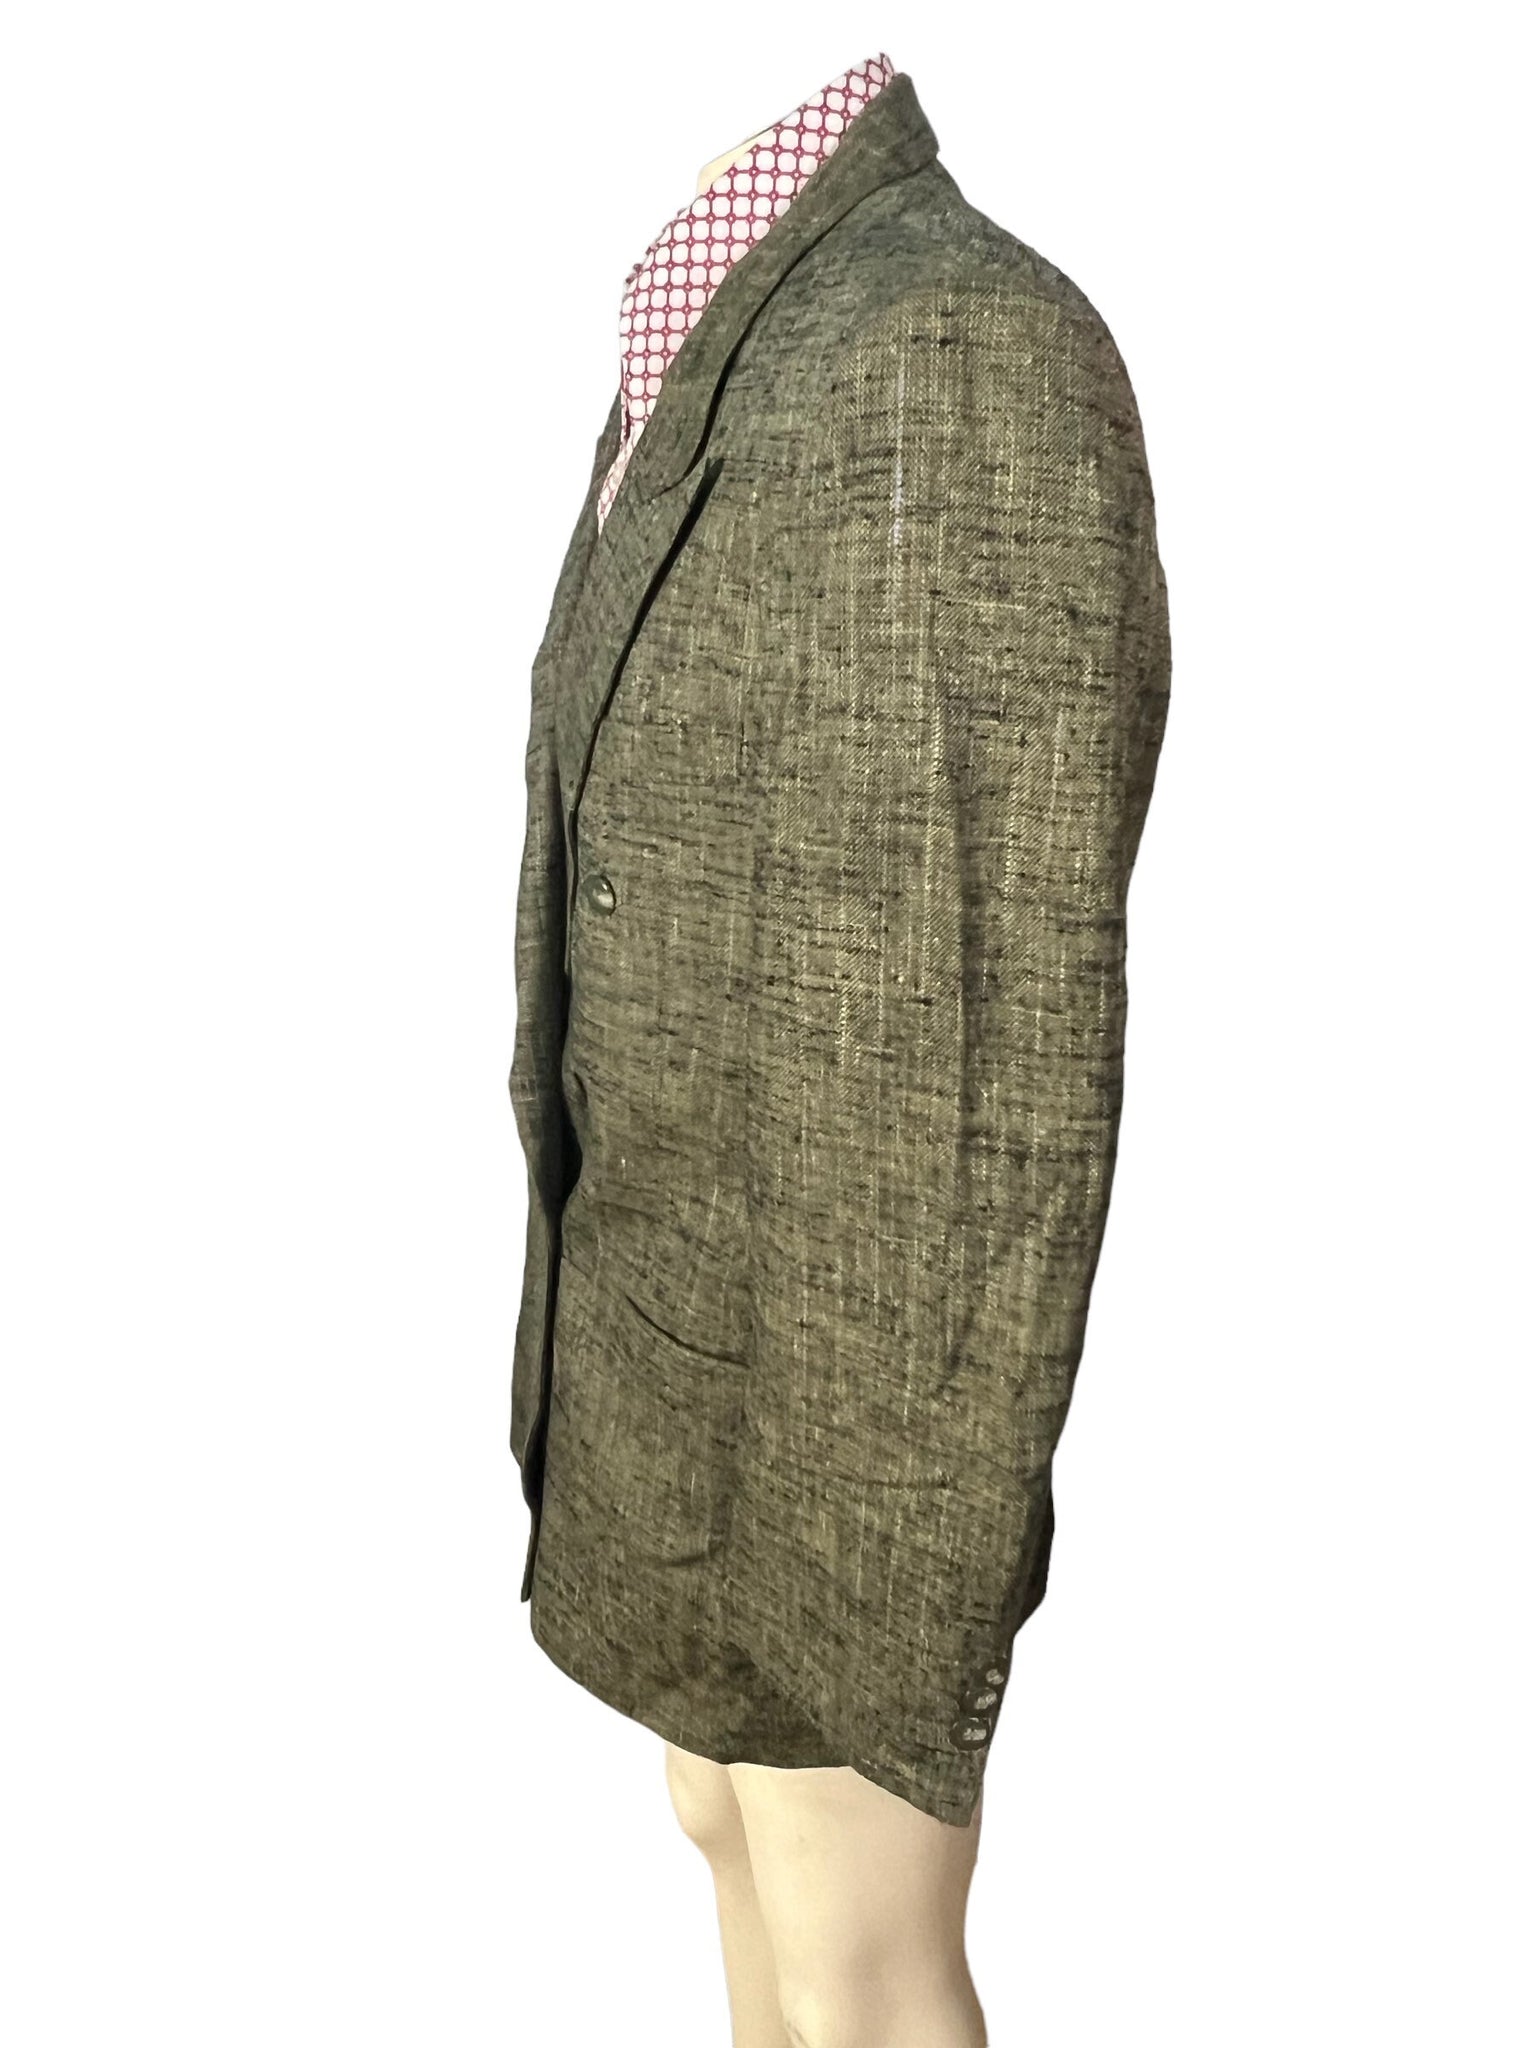 Vintage 80's Orsini gray suit jacket 42 R